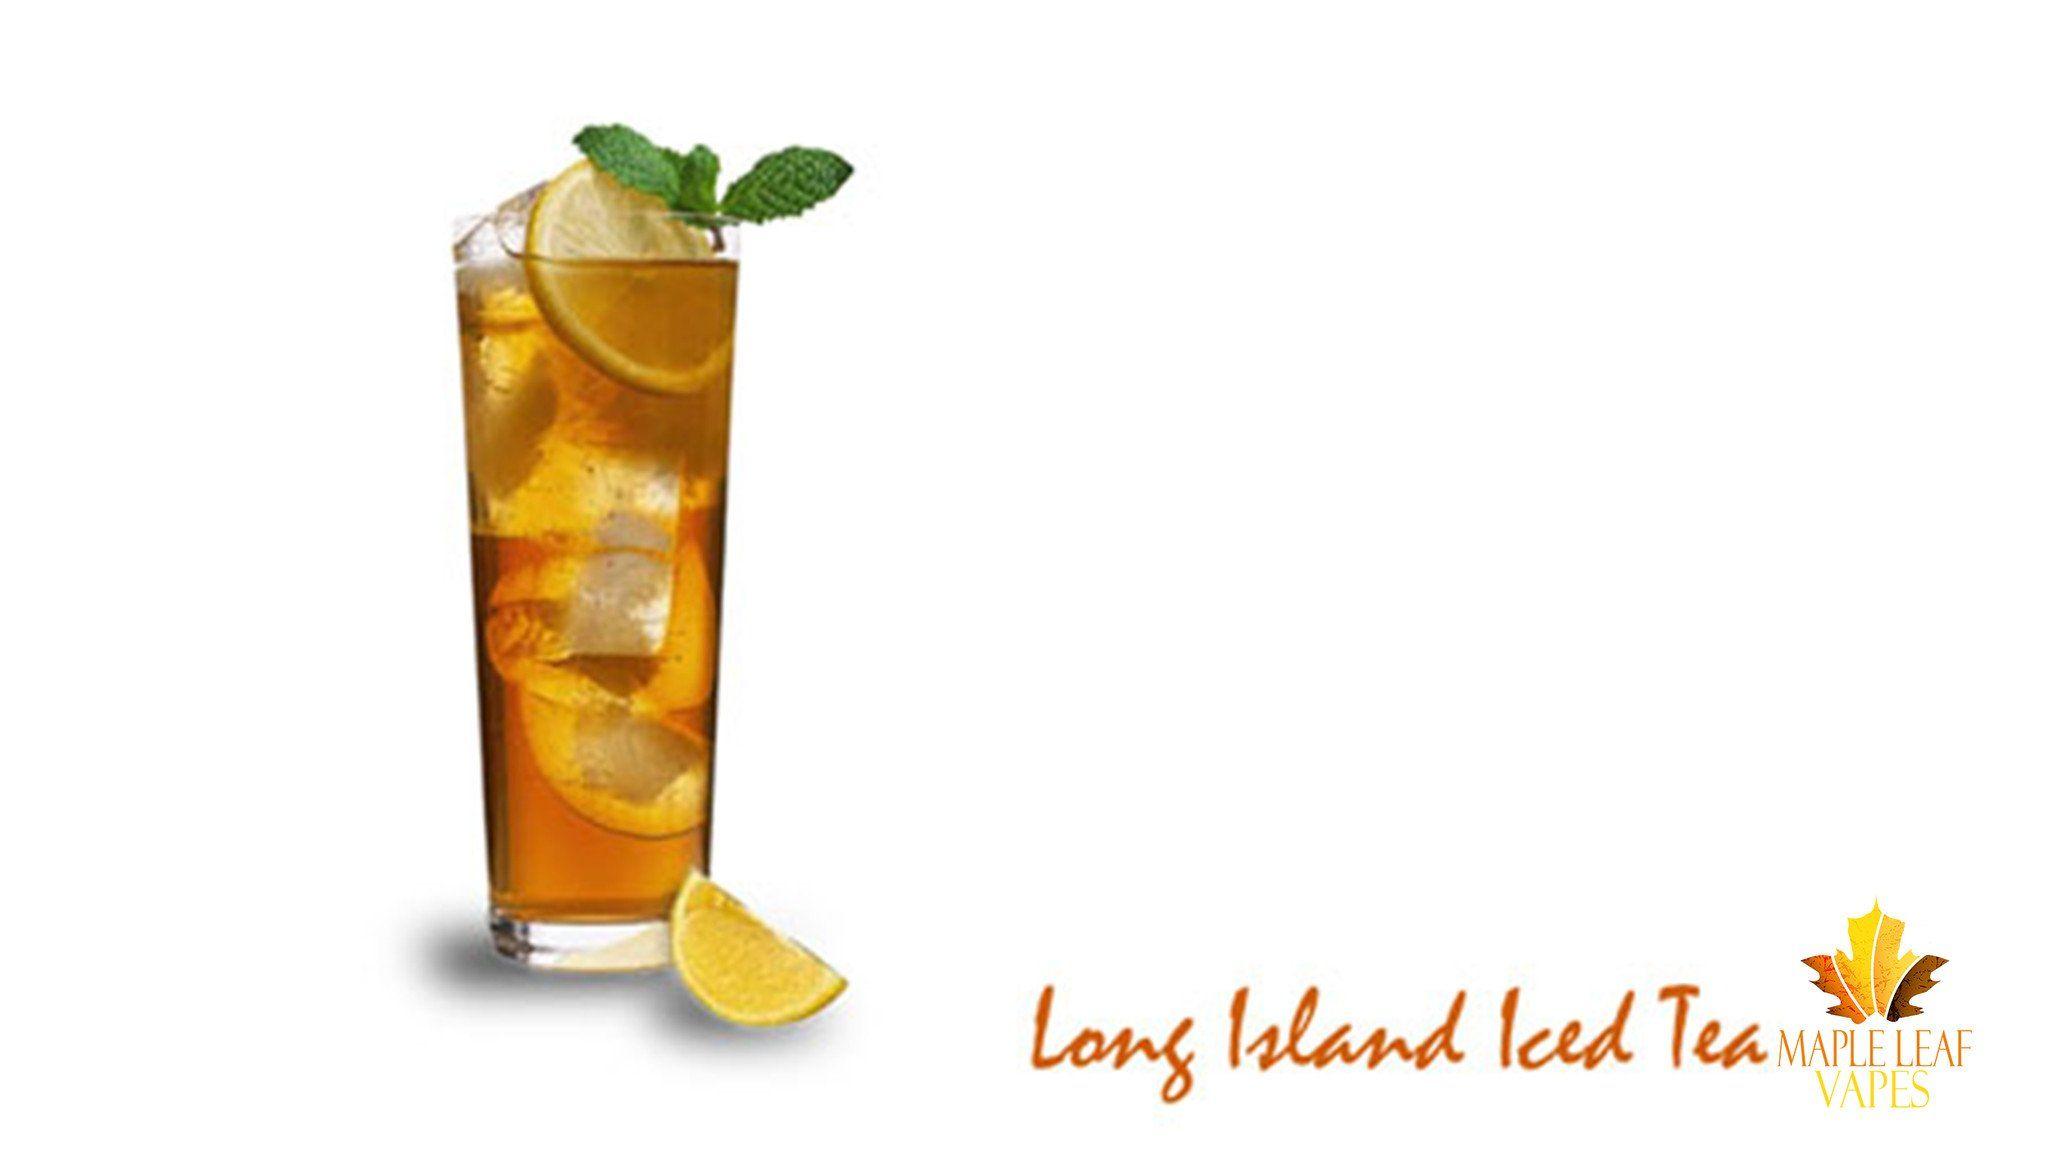 Long island iced tea receta